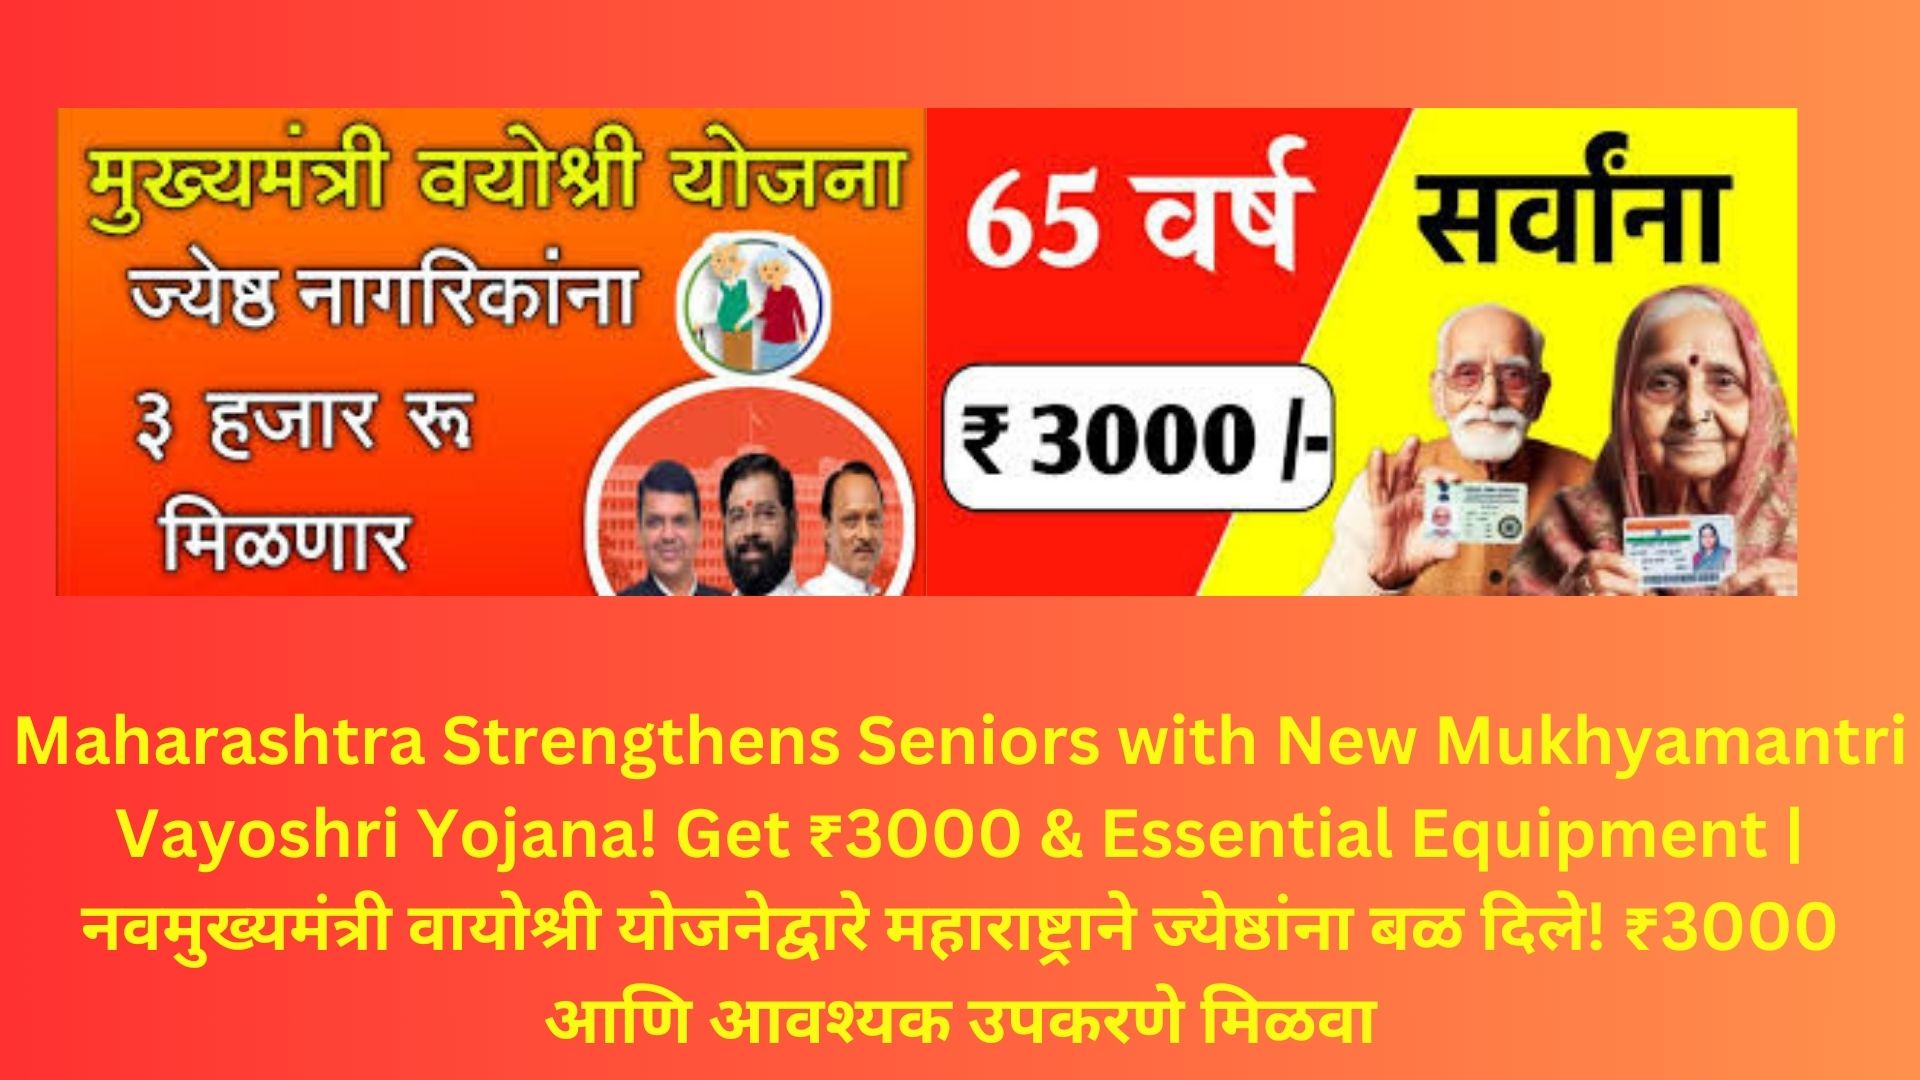 Maharashtra Strengthens Seniors with New Mukhyamantri Vayoshri Yojana! Get ₹3000 & Essential Equipment | नवमुख्यमंत्री वायोश्री योजनेद्वारे महाराष्ट्राने ज्येष्ठांना बळ दिले! ₹3000 आणि आवश्यक उपकरणे मिळवा